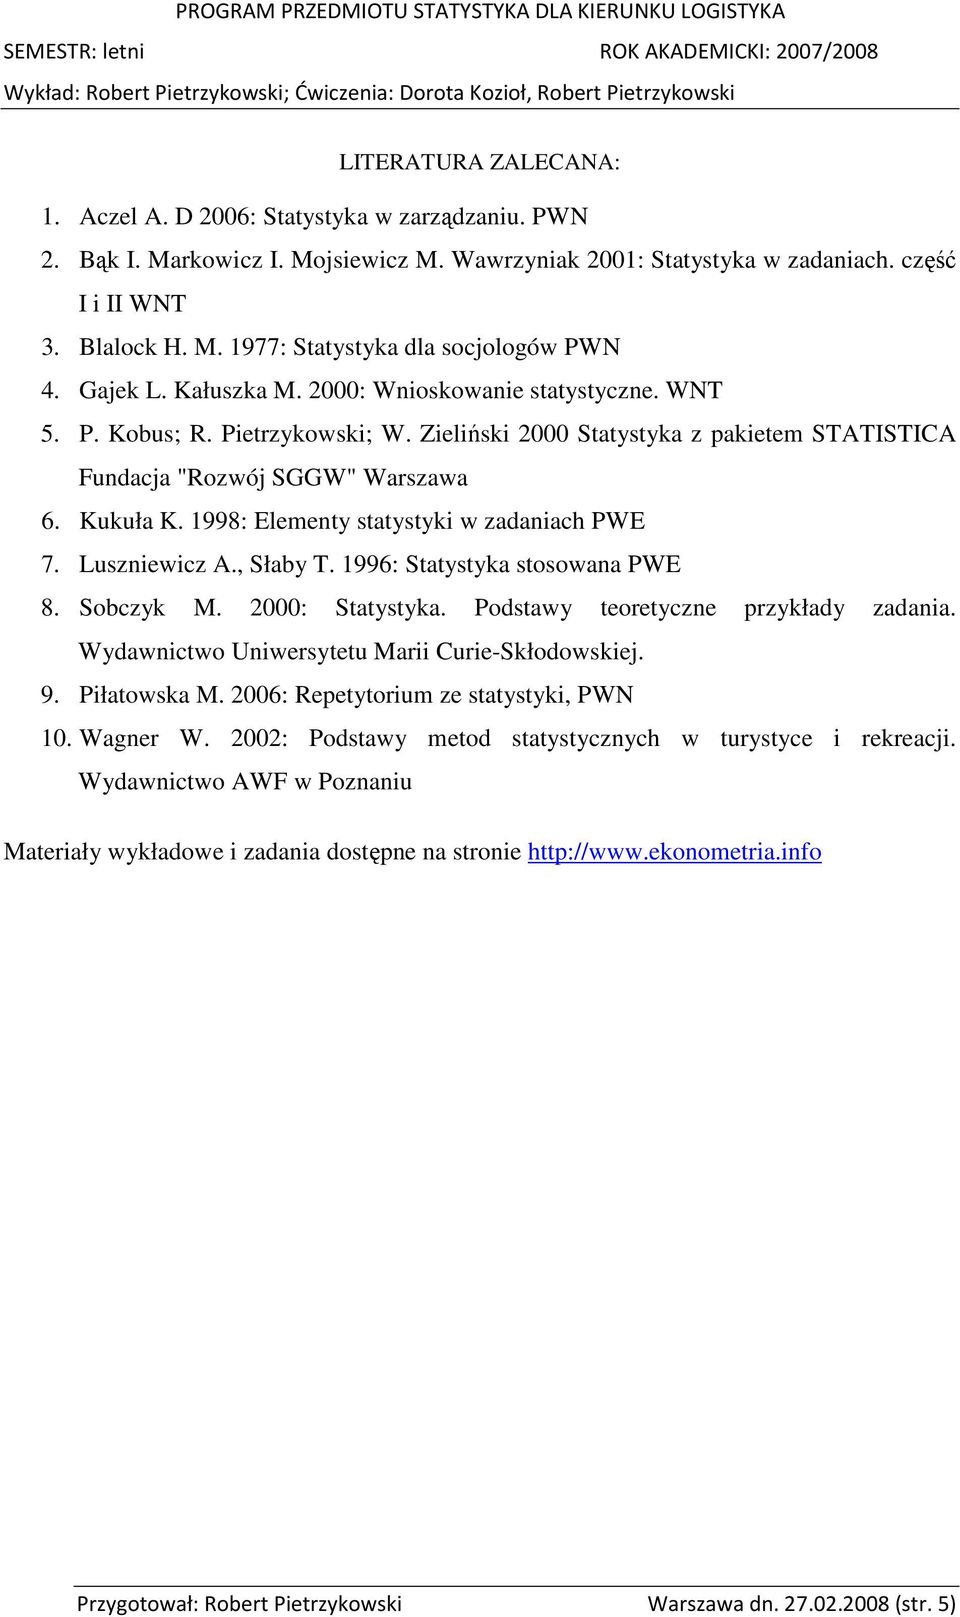 1998: Elementy statystyki w zadaniach PWE 7. Luszniewicz A., Słaby T. 1996: Statystyka stosowana PWE 8. Sobczyk M. 2000: Statystyka. Podstawy teoretyczne przykłady zadania.